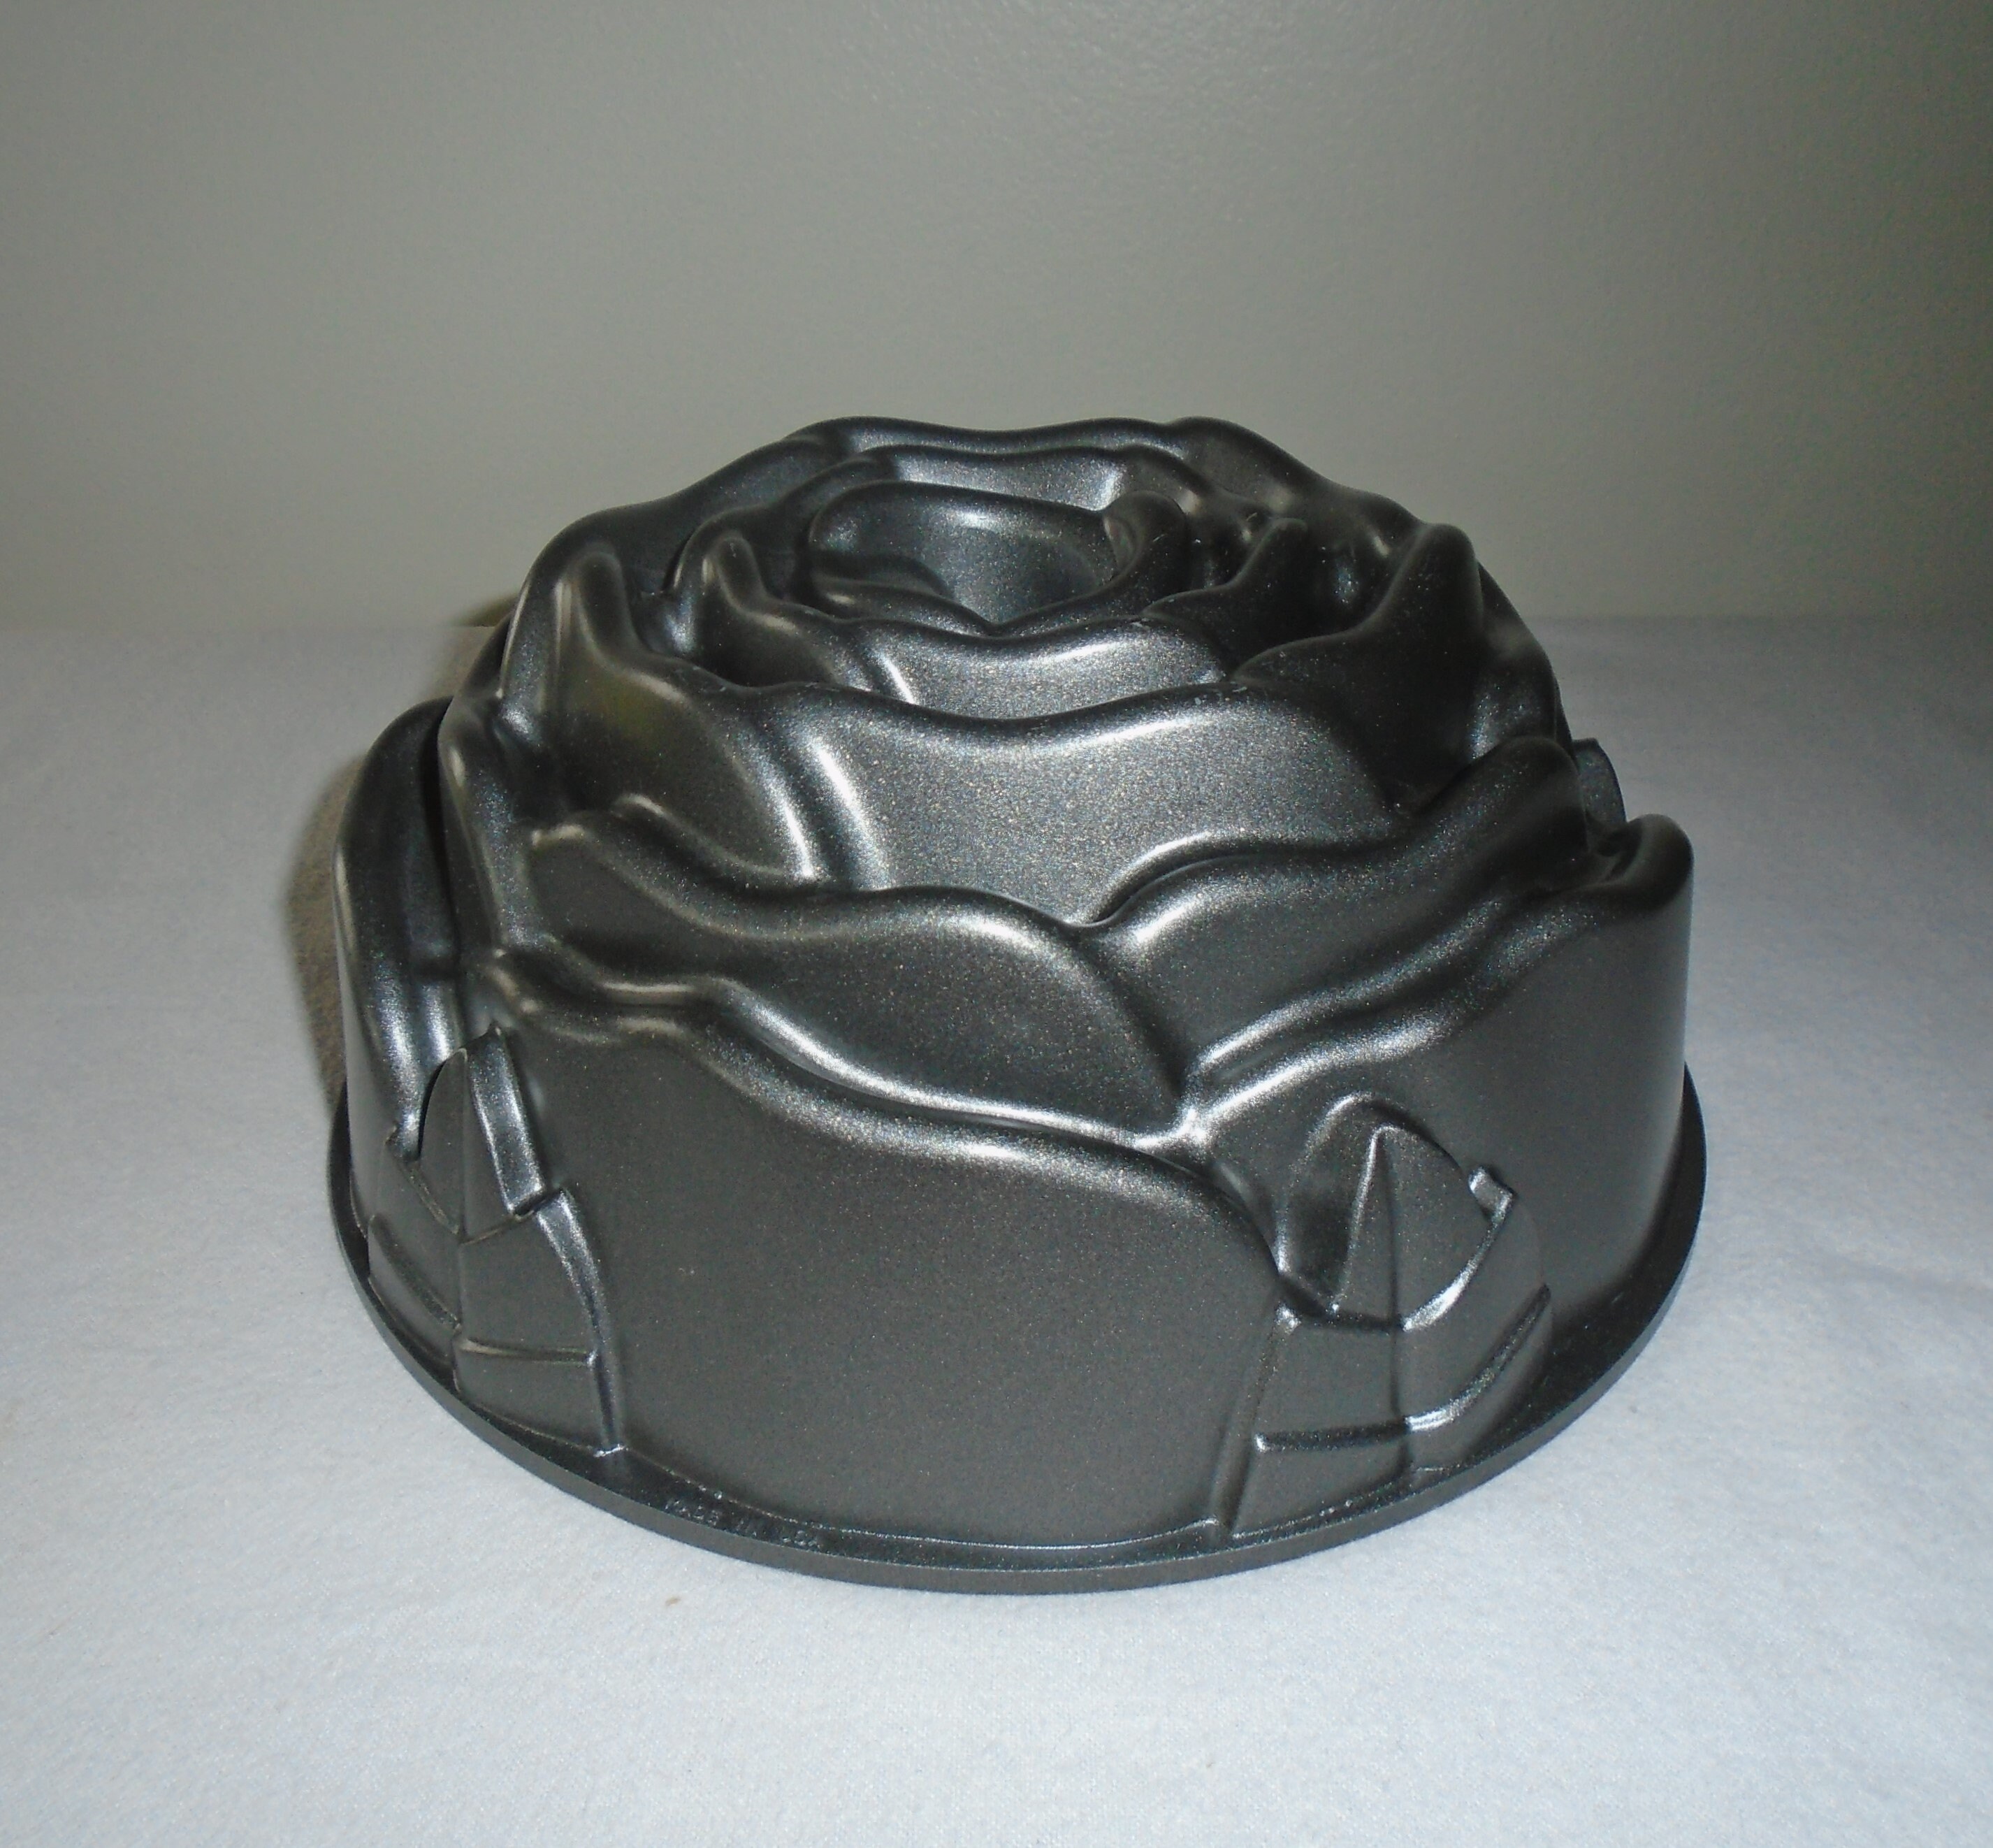 Bakers Secret Classic Bundt Cake Baking Mold Pan Cast Aluminum Collection  New!!